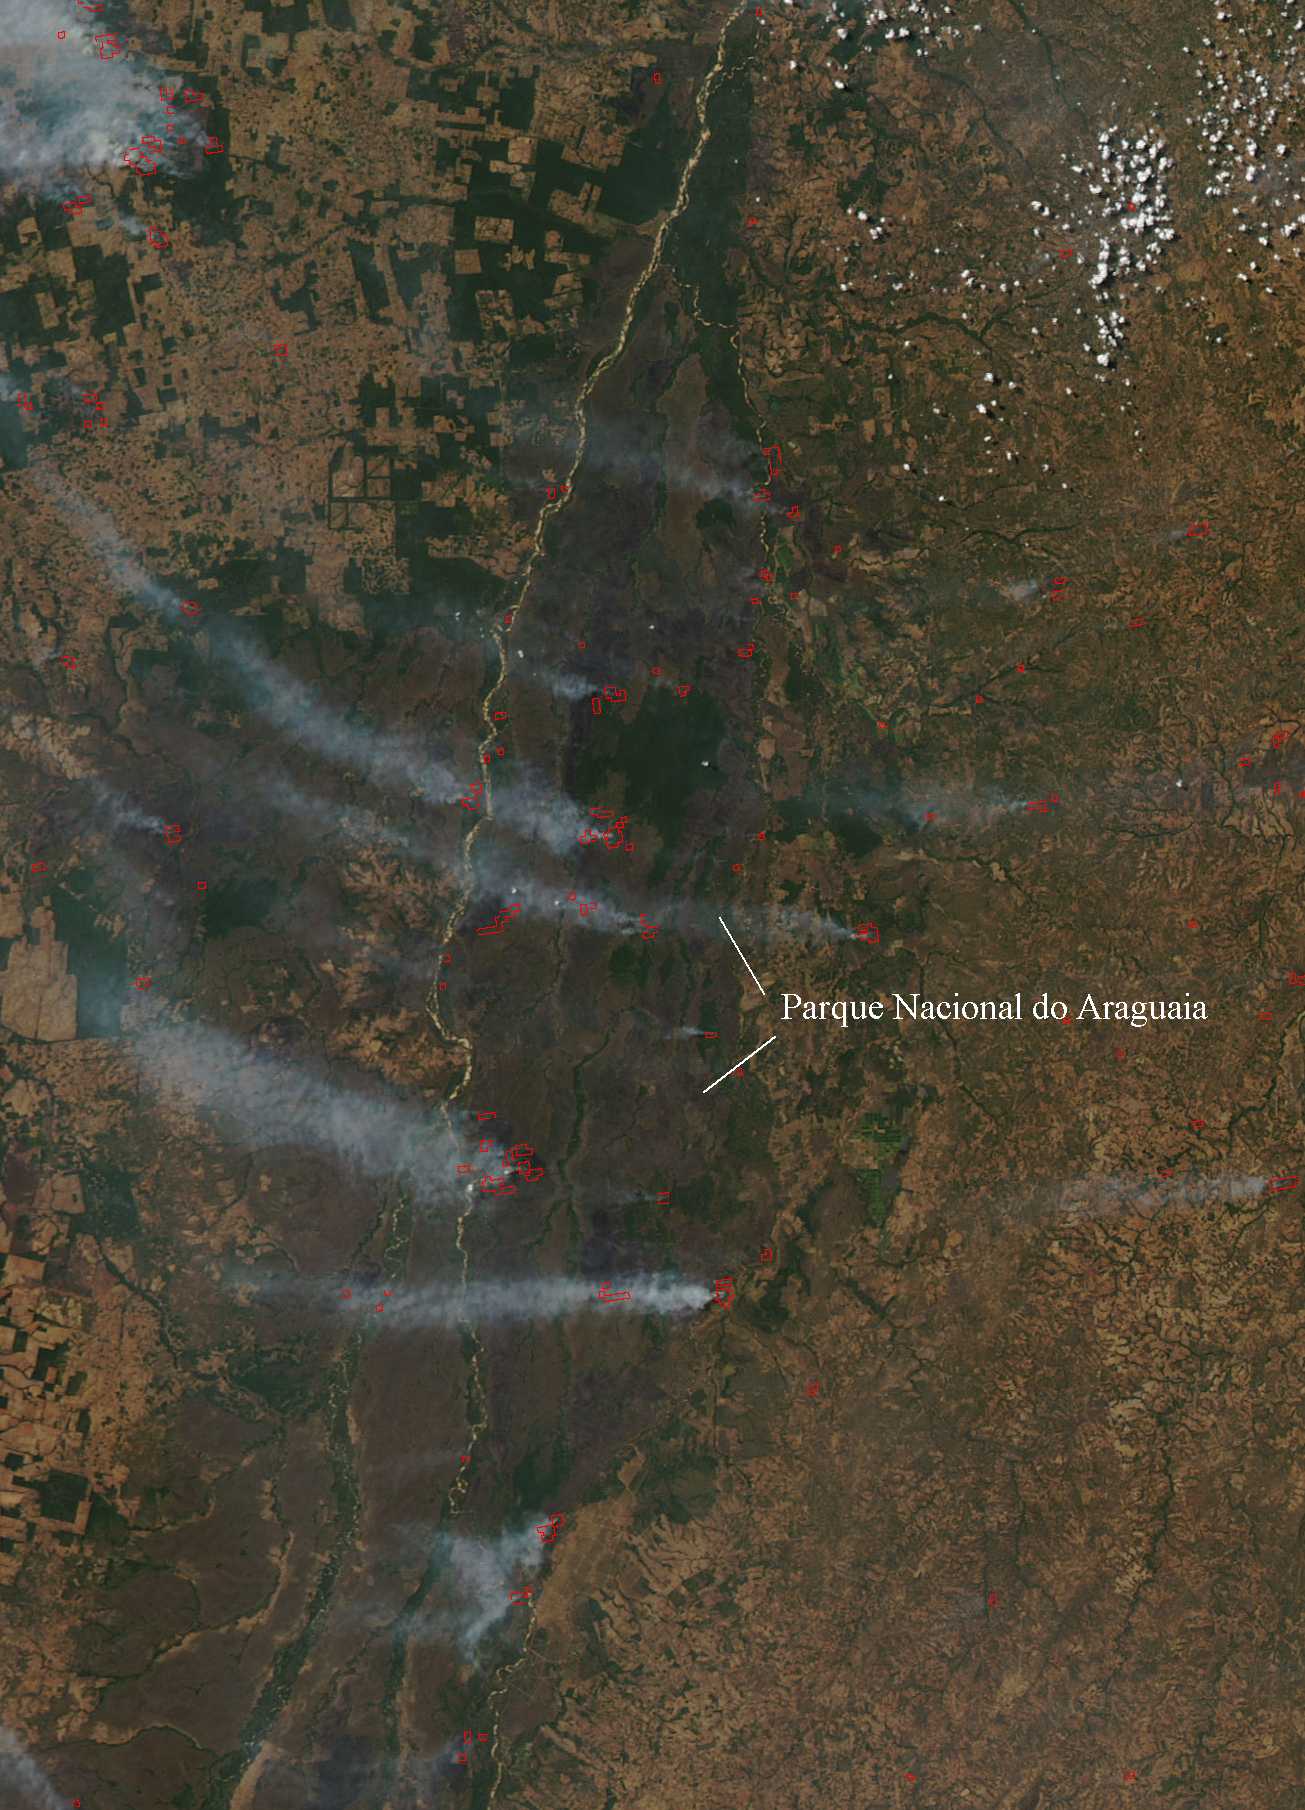 Parque Nacional do Araguaia no Tocantins é um dos mais afetados pelas queimadas. Foto de satélite do dia 17 de agosto (fonte: NASA)